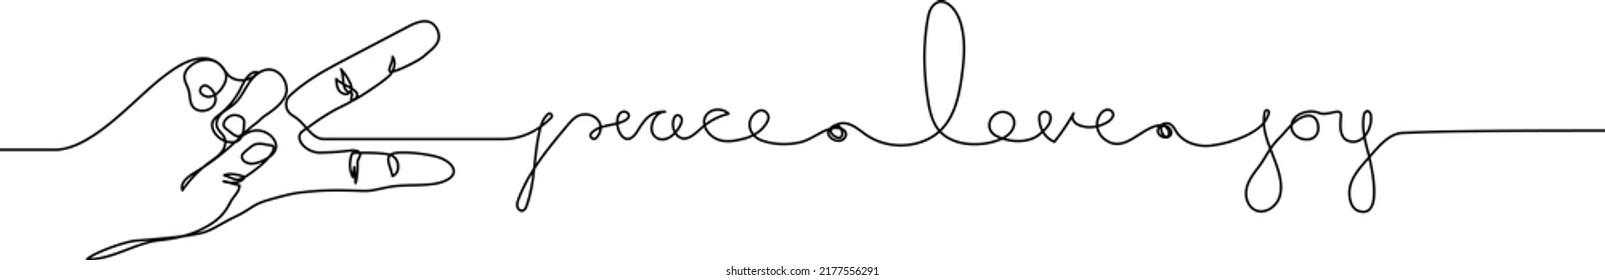 Peace love joy handwritten